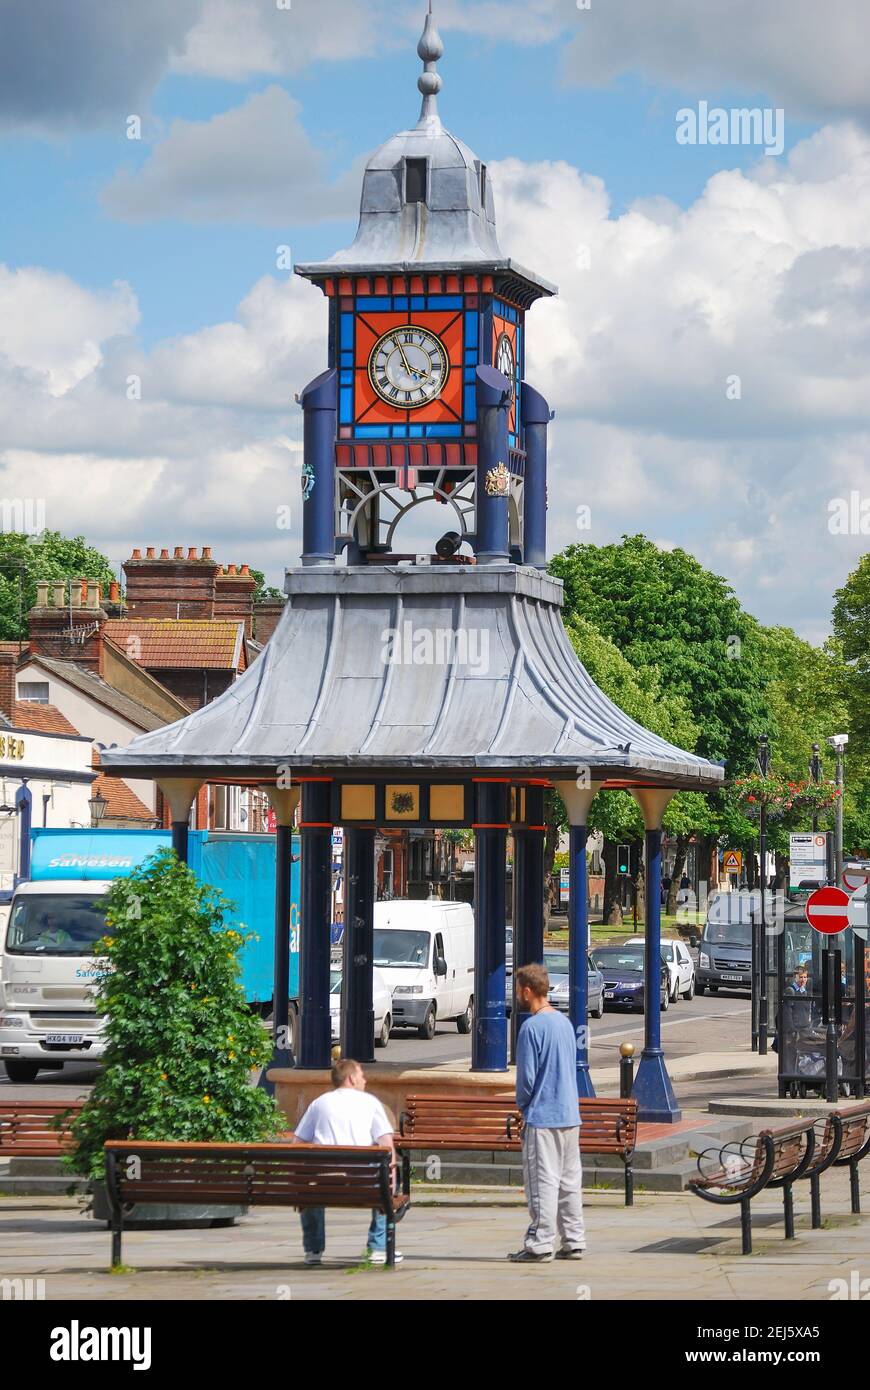 L'horloge du marché, Ashton, carrés, Dunstable Bedfordshire, Angleterre, Royaume-Uni Banque D'Images